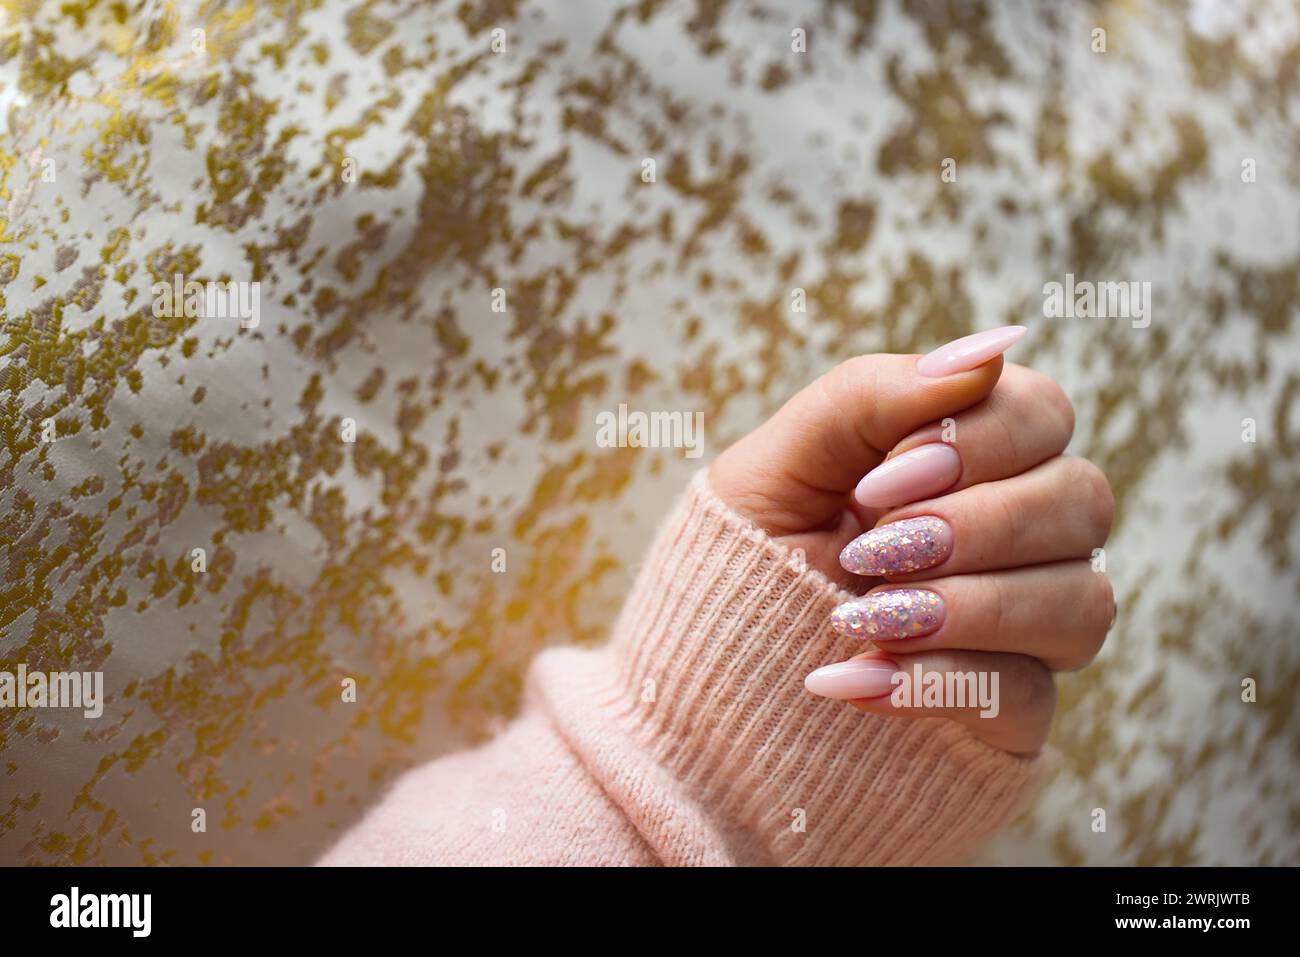 Une image représentant une main de femme avec de superbes ongles en gel rose, méticuleusement peints et ornés de paillettes multicolores élégantes. La main est bien-M. Banque D'Images